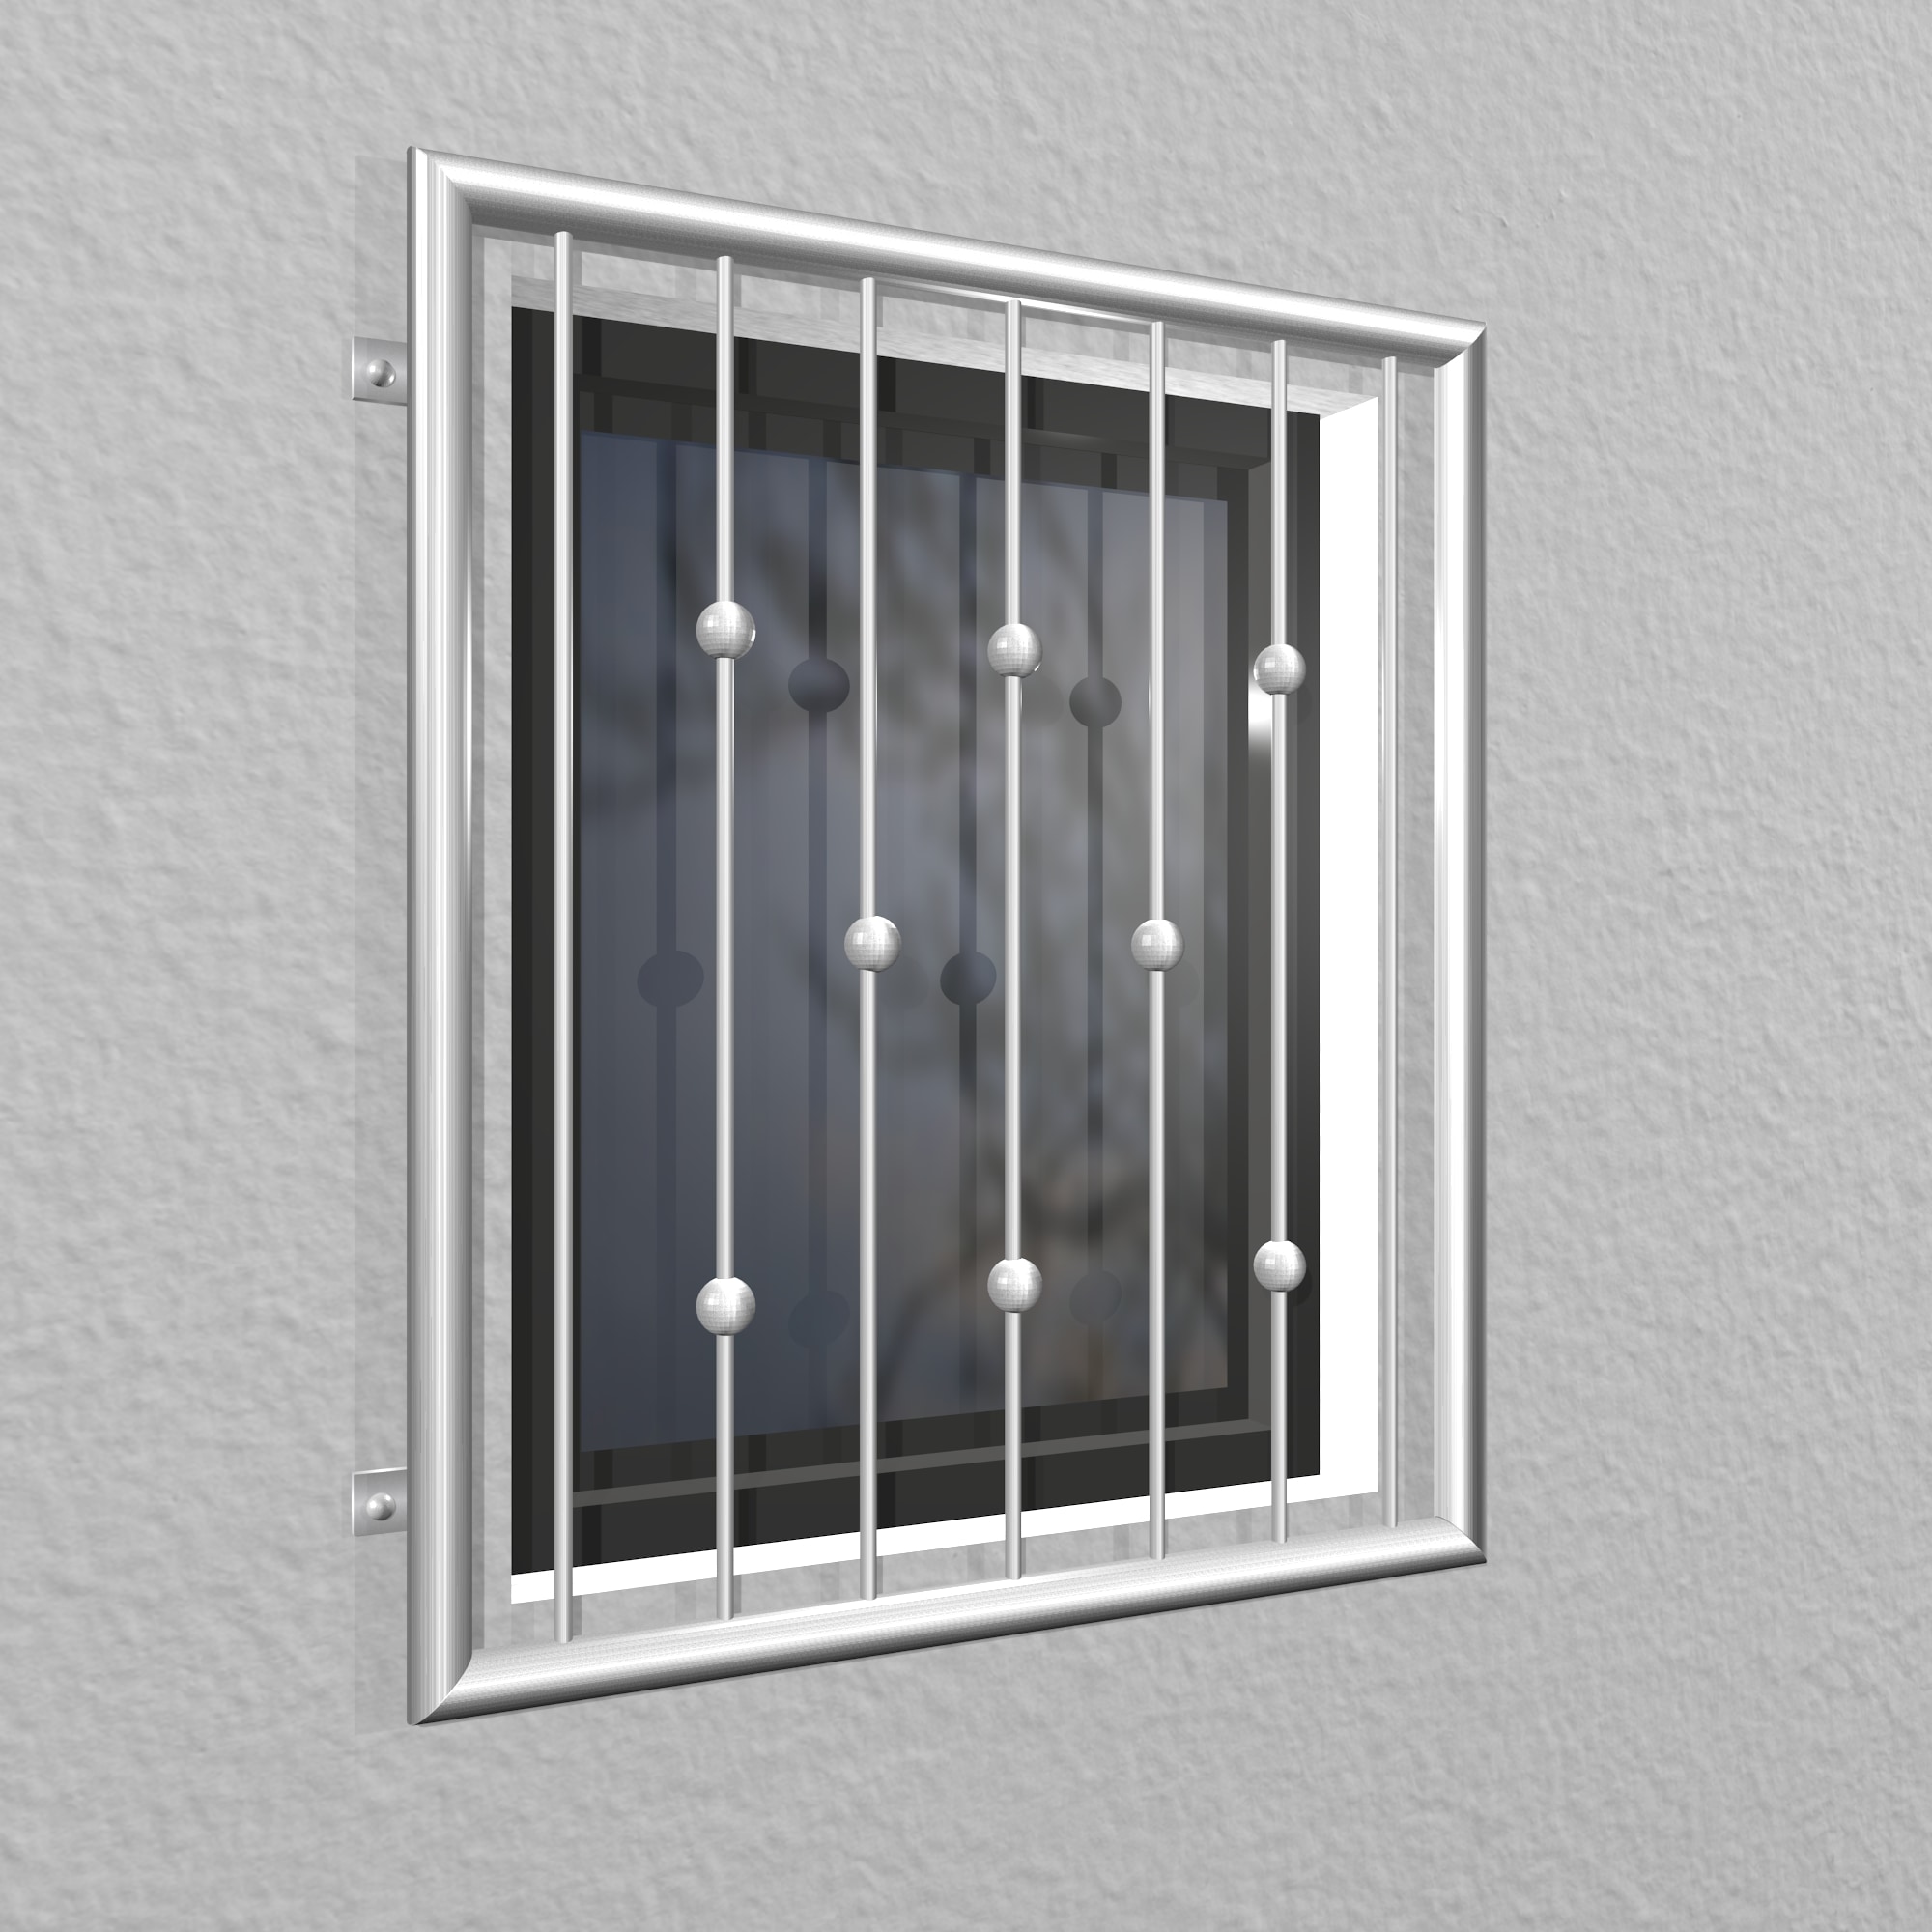 Grille de défense pour fenêtres en acier inoxydable billes décalées